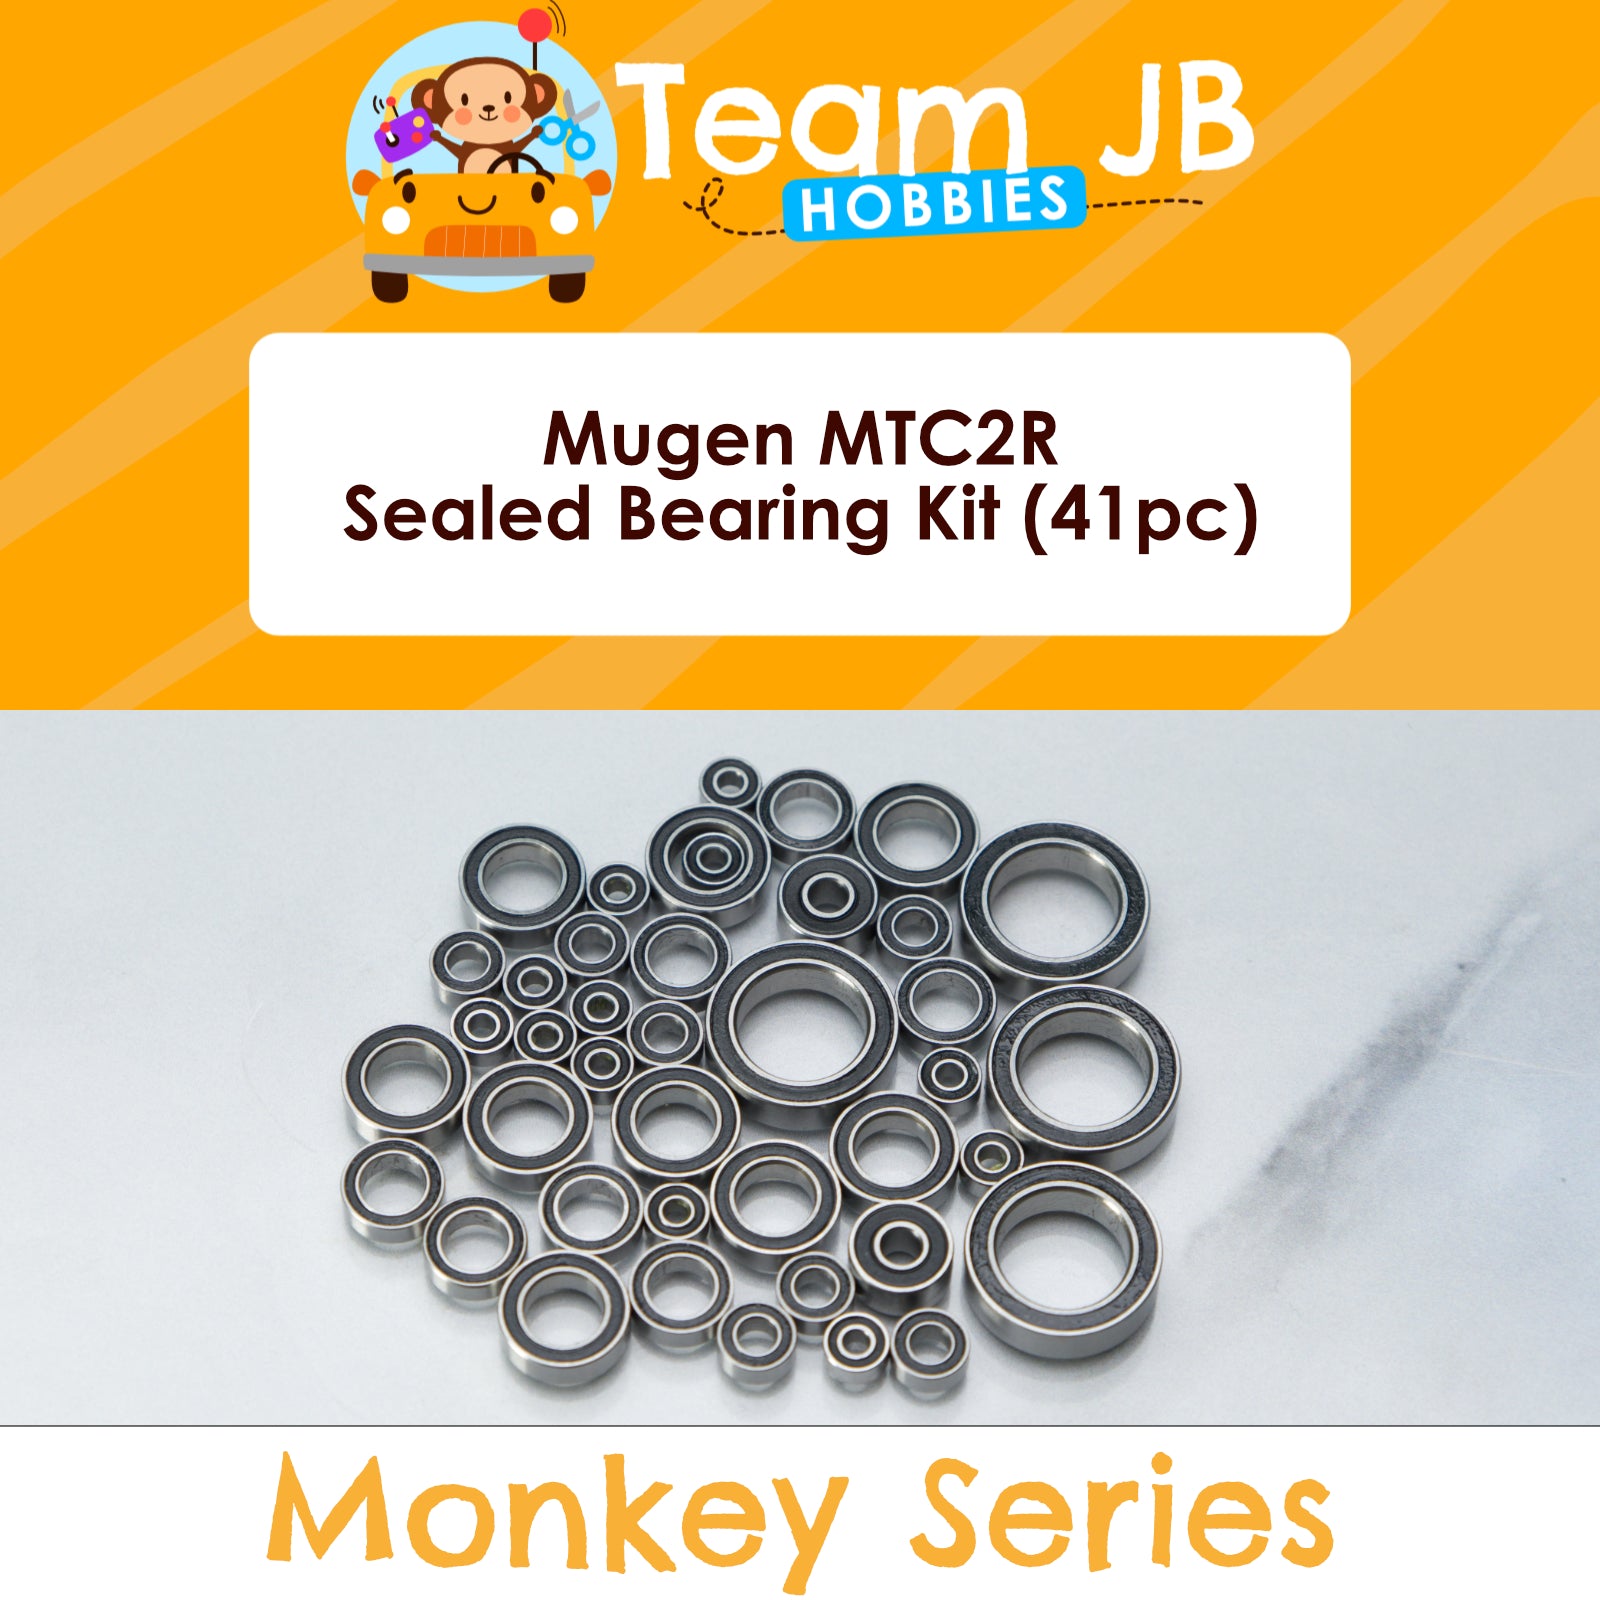 Mugen MTC2R - Sealed Bearing Kit